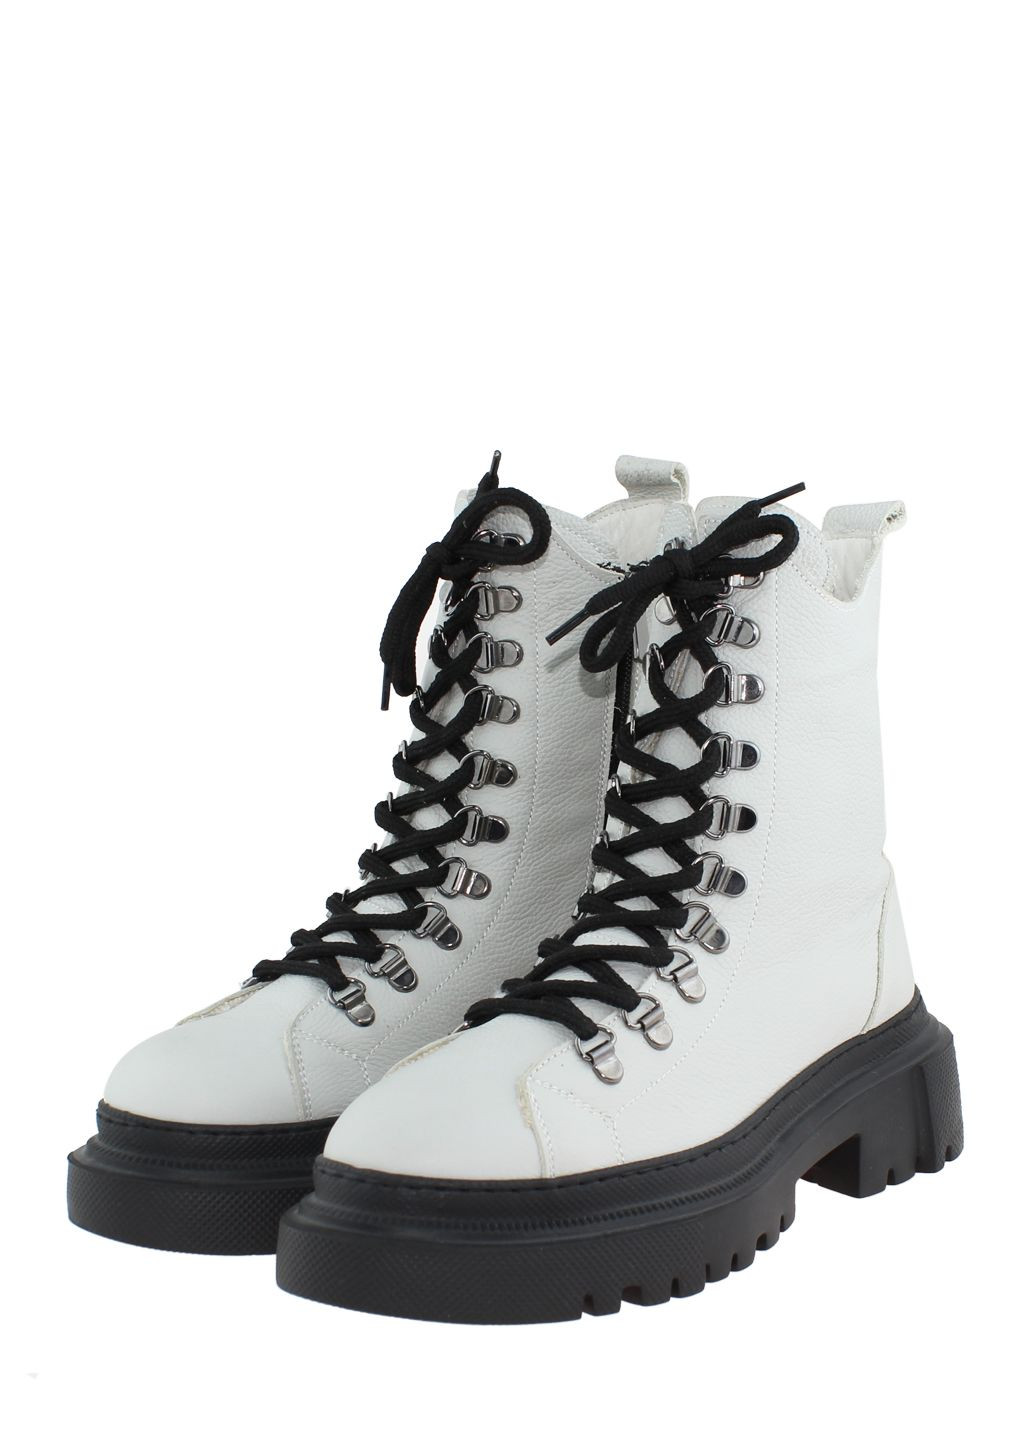 Зимние ботинки g21057.07 светло-серый Dexcor